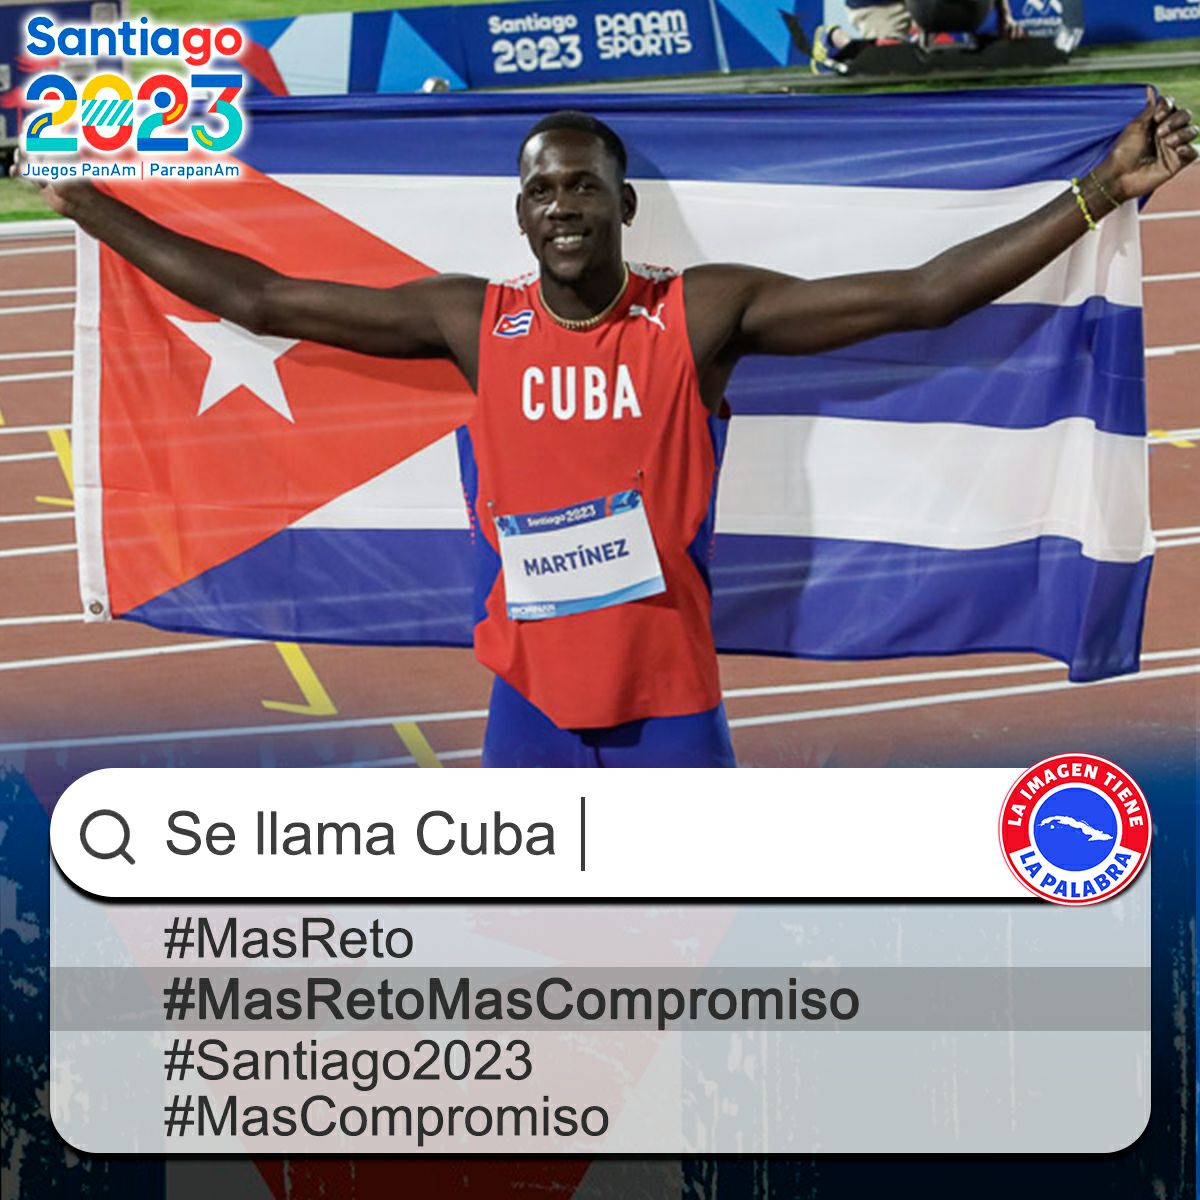 🇨🇺 Una Victoria para Cuba y la delegación que nos representó en los Juegos Panamericanos. #MasRetosMasCompromiso
#Cuba